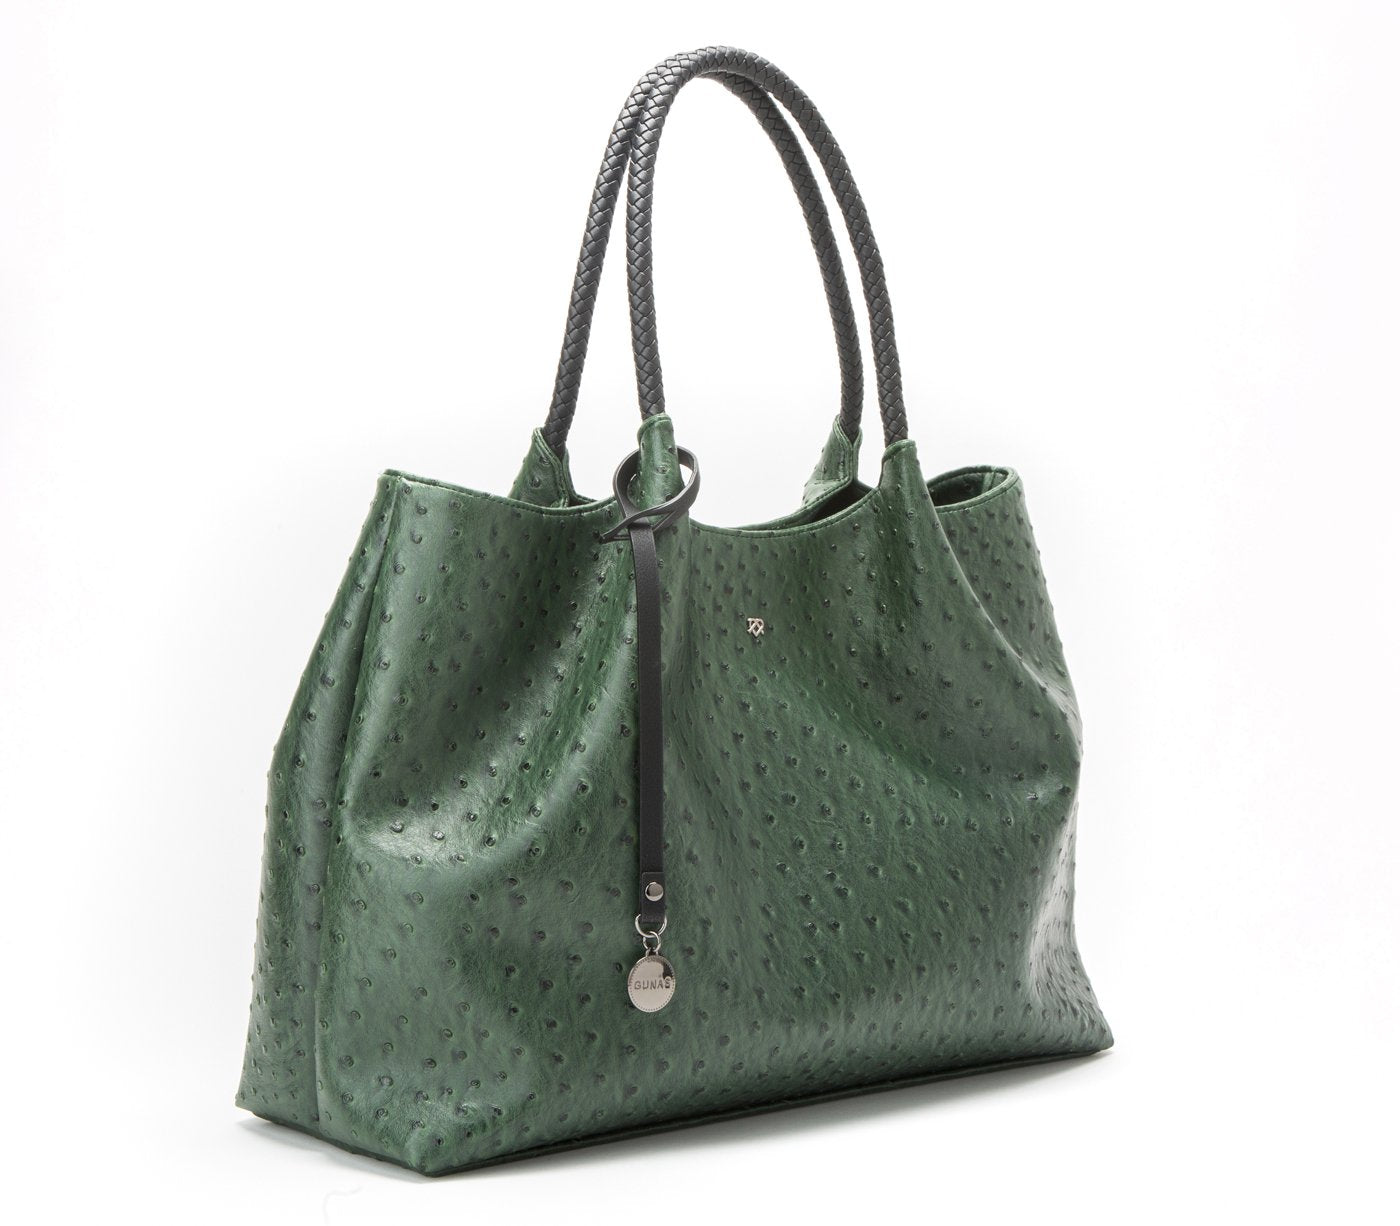 Naomi - Dark Green Vegan Leather Tote Bag